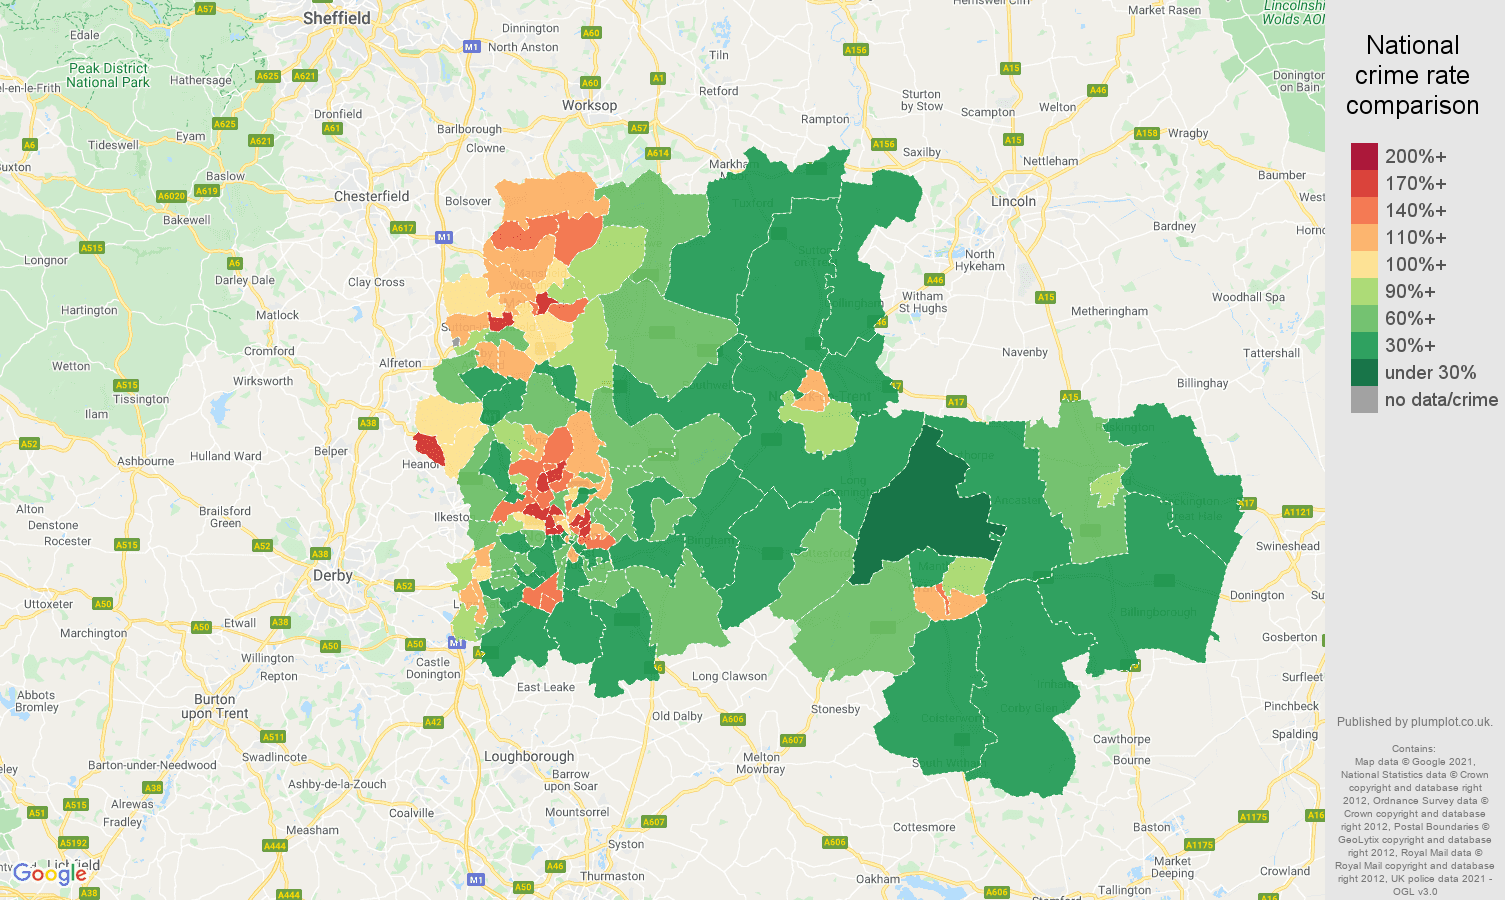 Nottingham violent crime rate comparison map